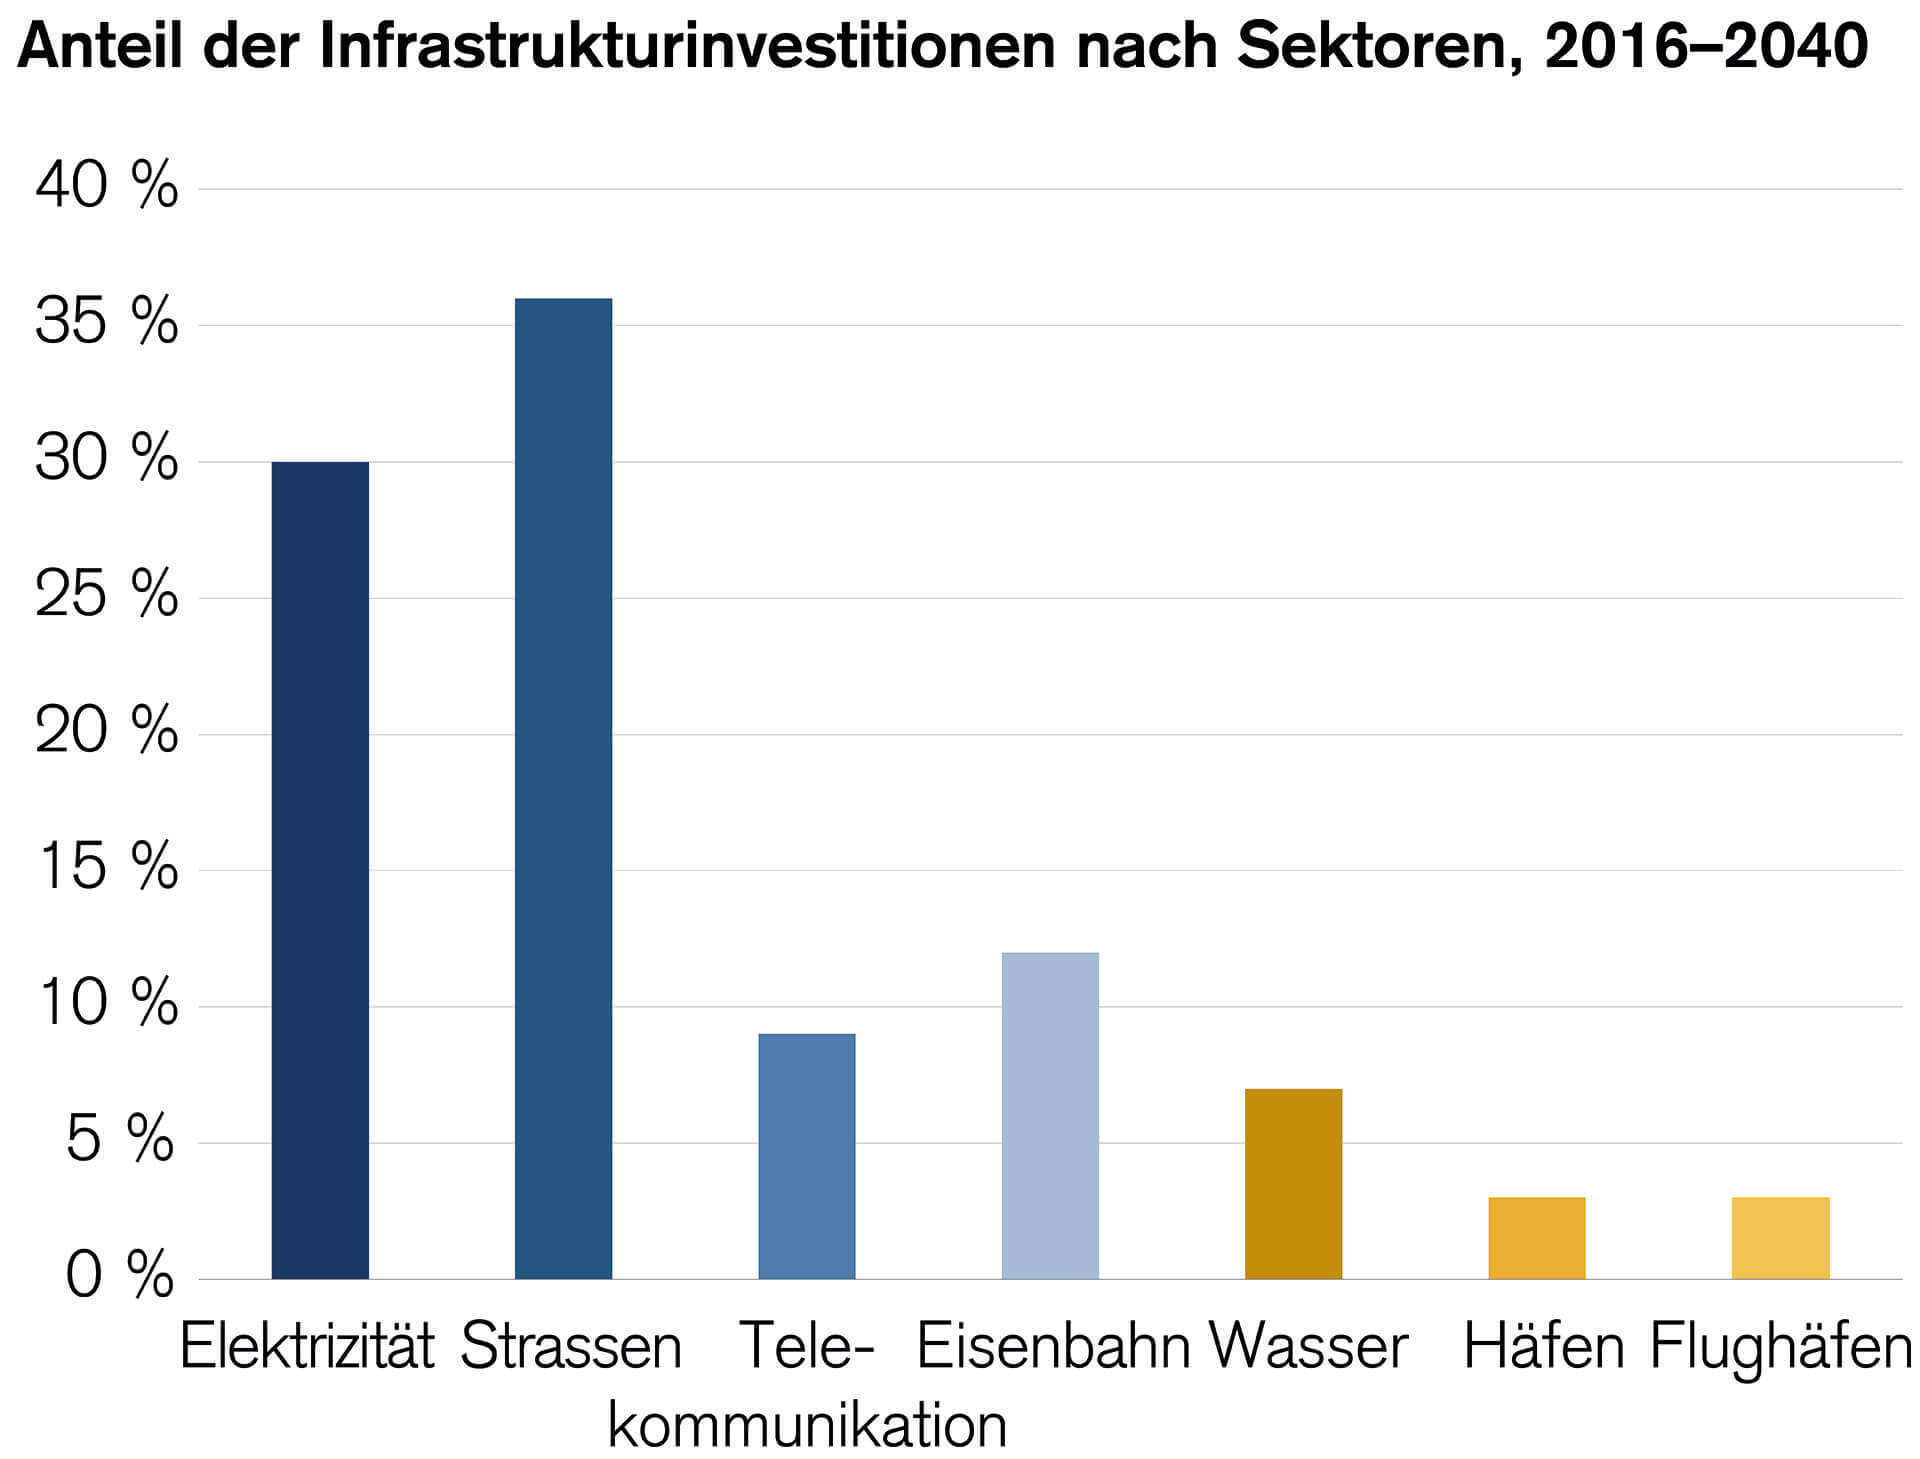 Säulendiagramm, das den Anteil der einzelnen Sektoren an den Infrastrukturausgaben für den Zeitraum 2016–2040 zeigt.